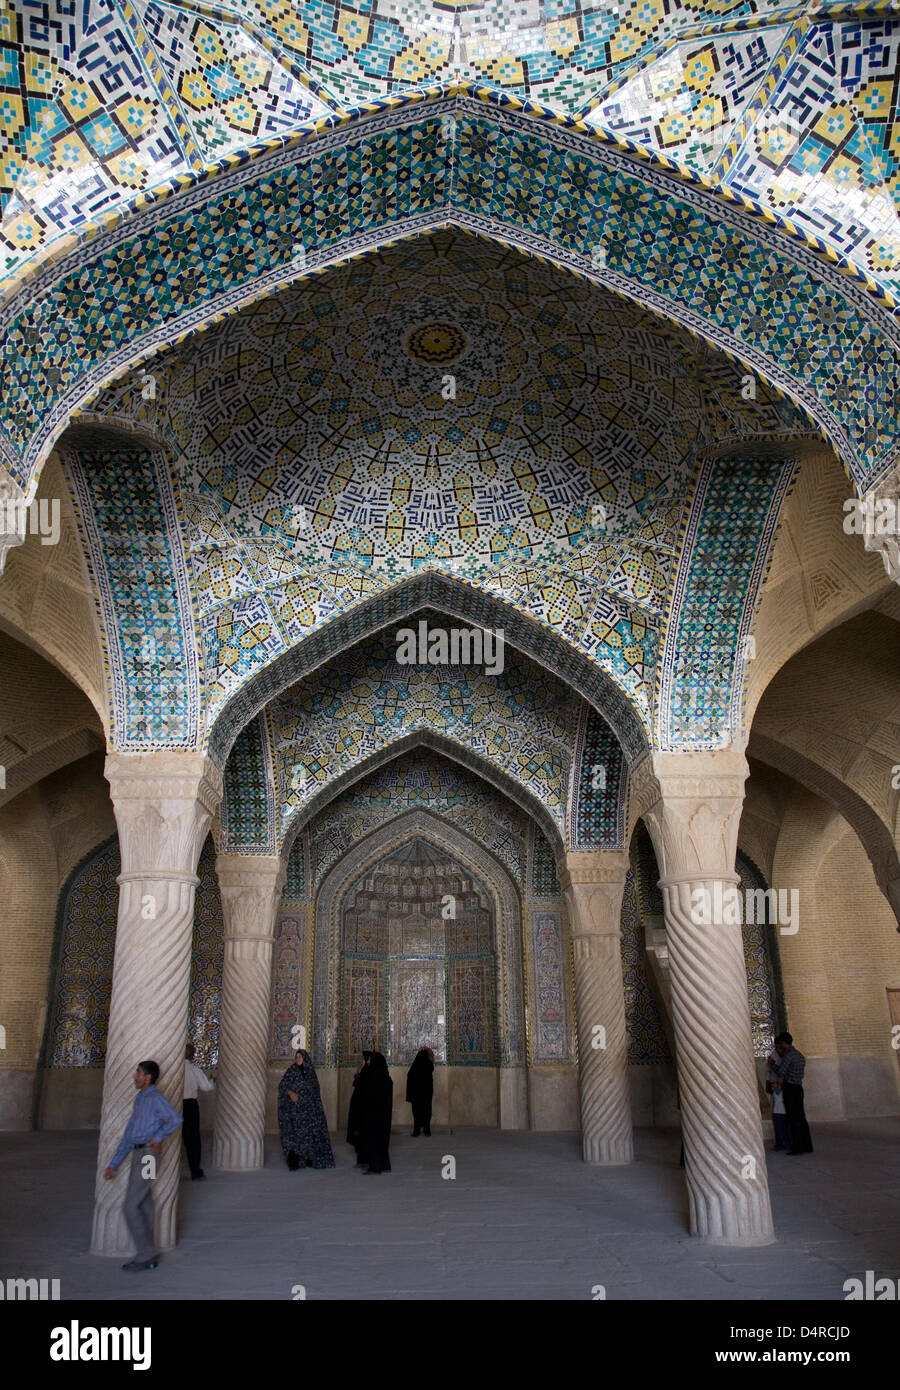 Das Bild zeigt das Innere der Vakil Moschee in Schiraz, Iran, im März 2009. Mit 1,6 Millionen Einwohnern zählt Shiraz zu Iran? s Großstädten und zieht Tausende von Touristen pro Jahr vor allem für Persepolis, UNESCO World Heritage Site einige 60 Kilometer ausserhalb von Shiraz. Foto: Boris Roessler Stockfoto